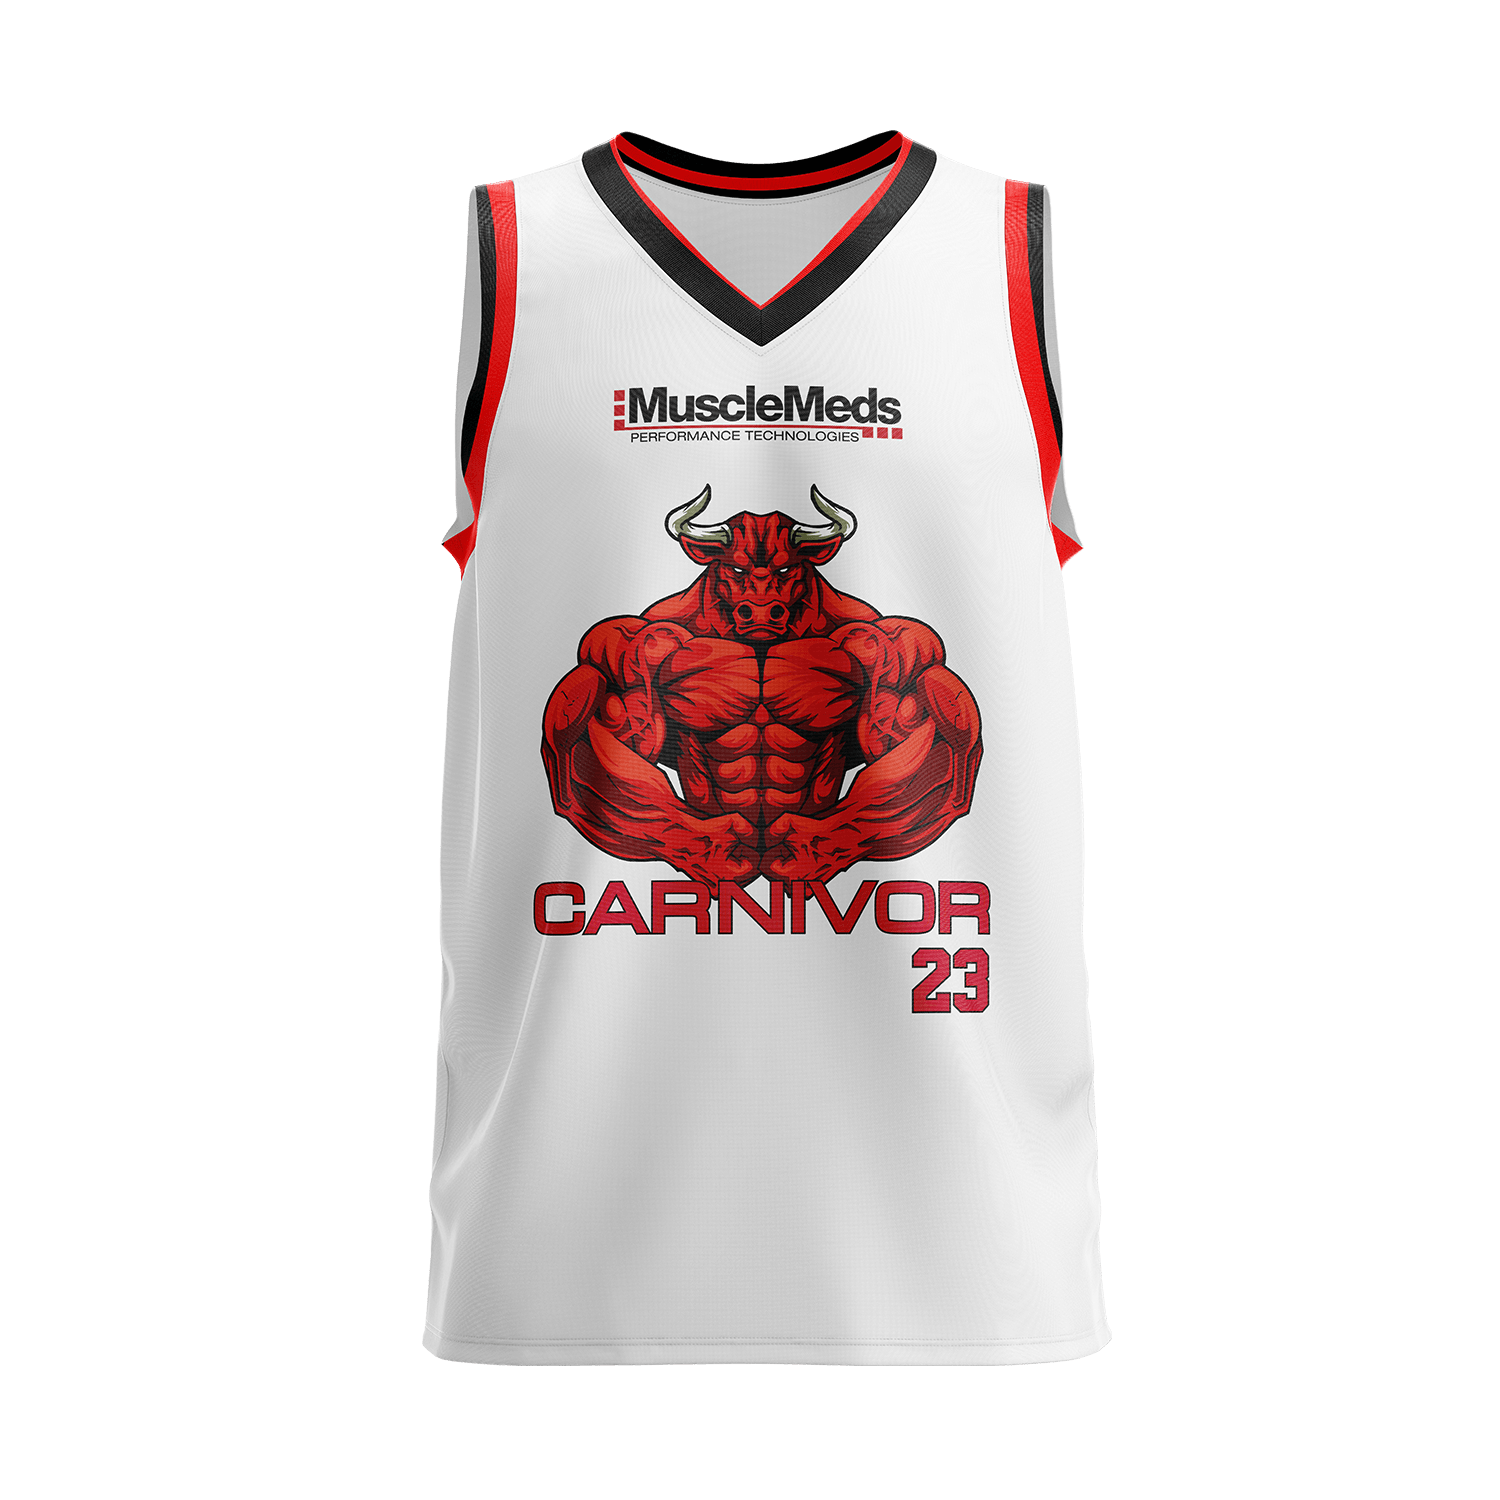 Carnivor Bull Mesh Basketball Jersey - White